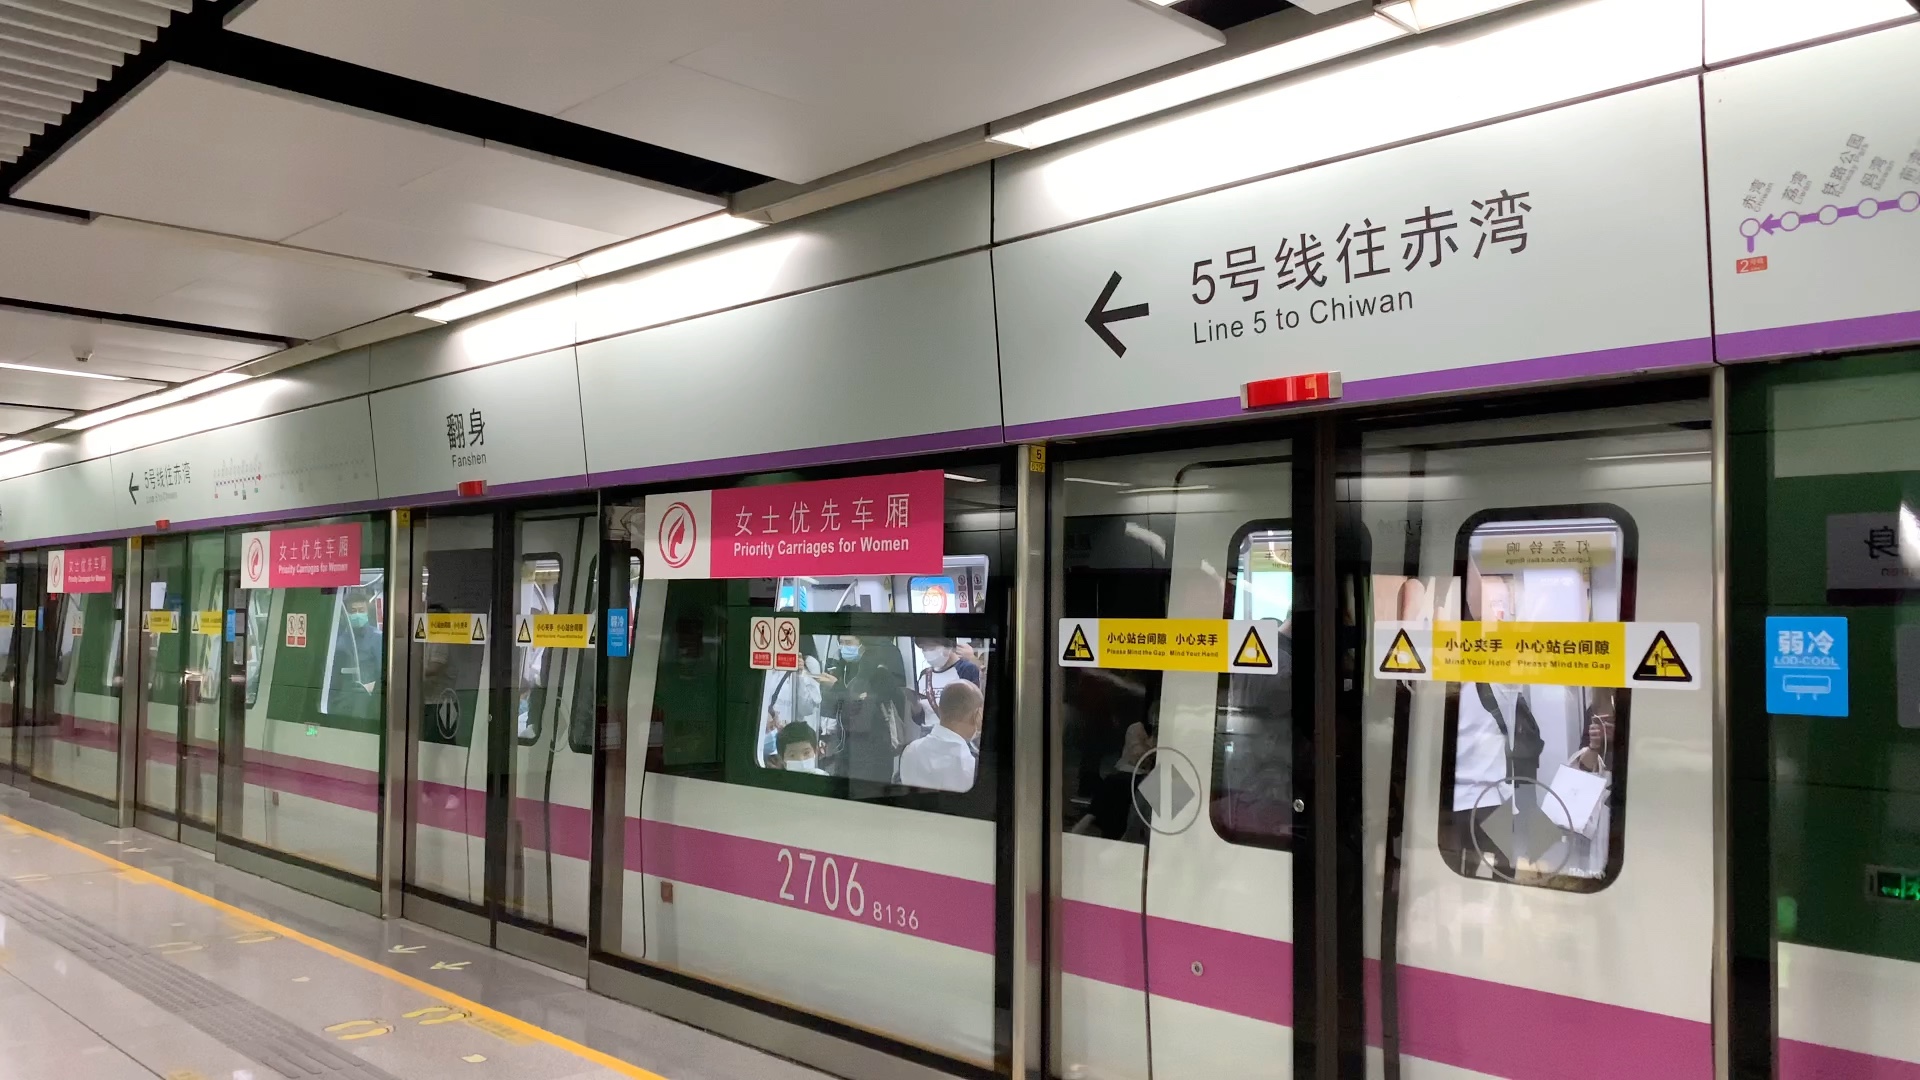 深圳地铁5号线在5号线的8号线列车270赤湾方向出站